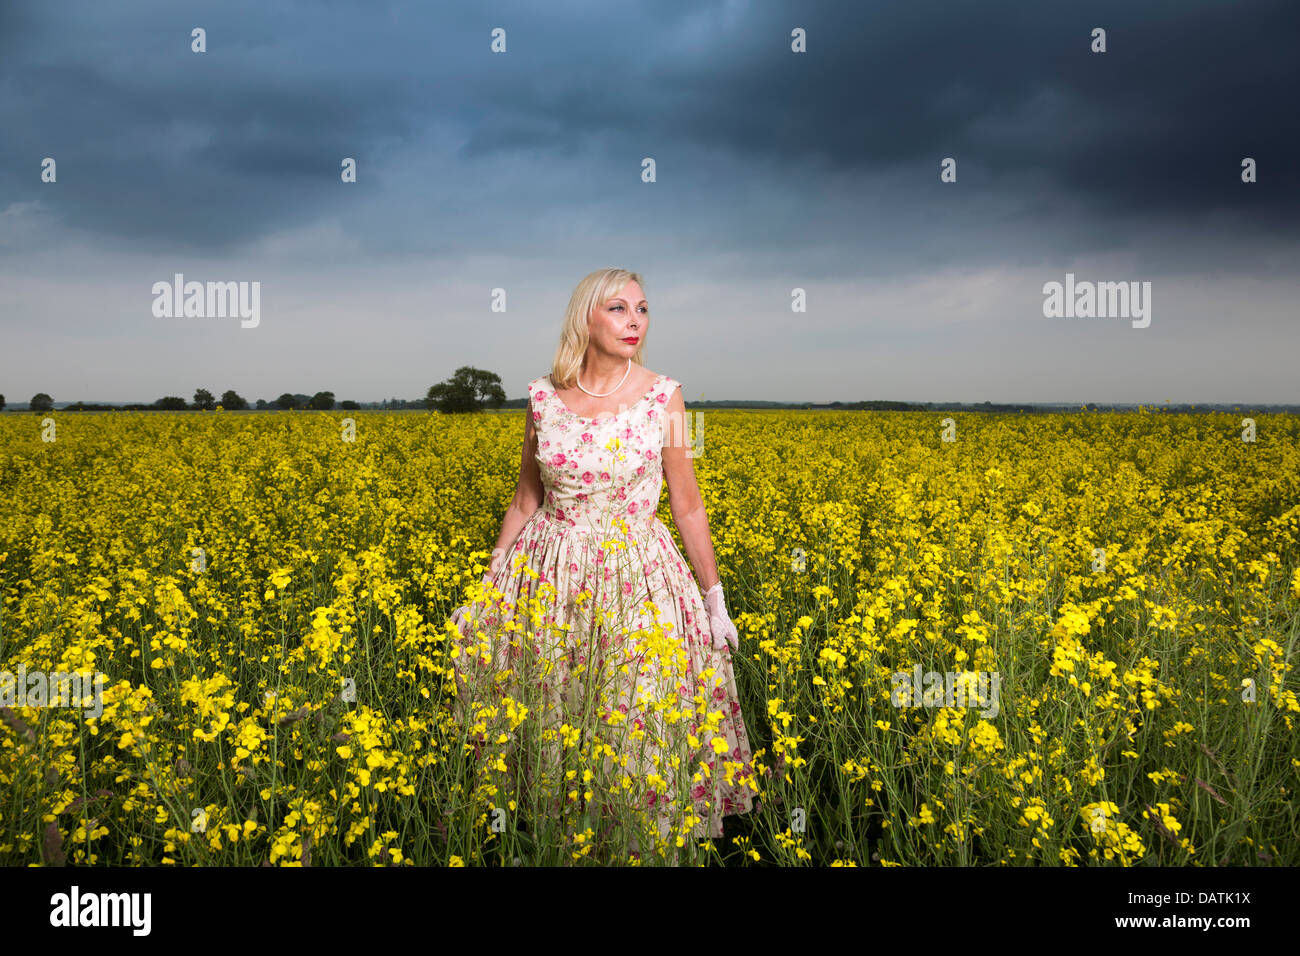 Frau im Feld in der offenen Landschaft mit Raps Ernte Stockfoto